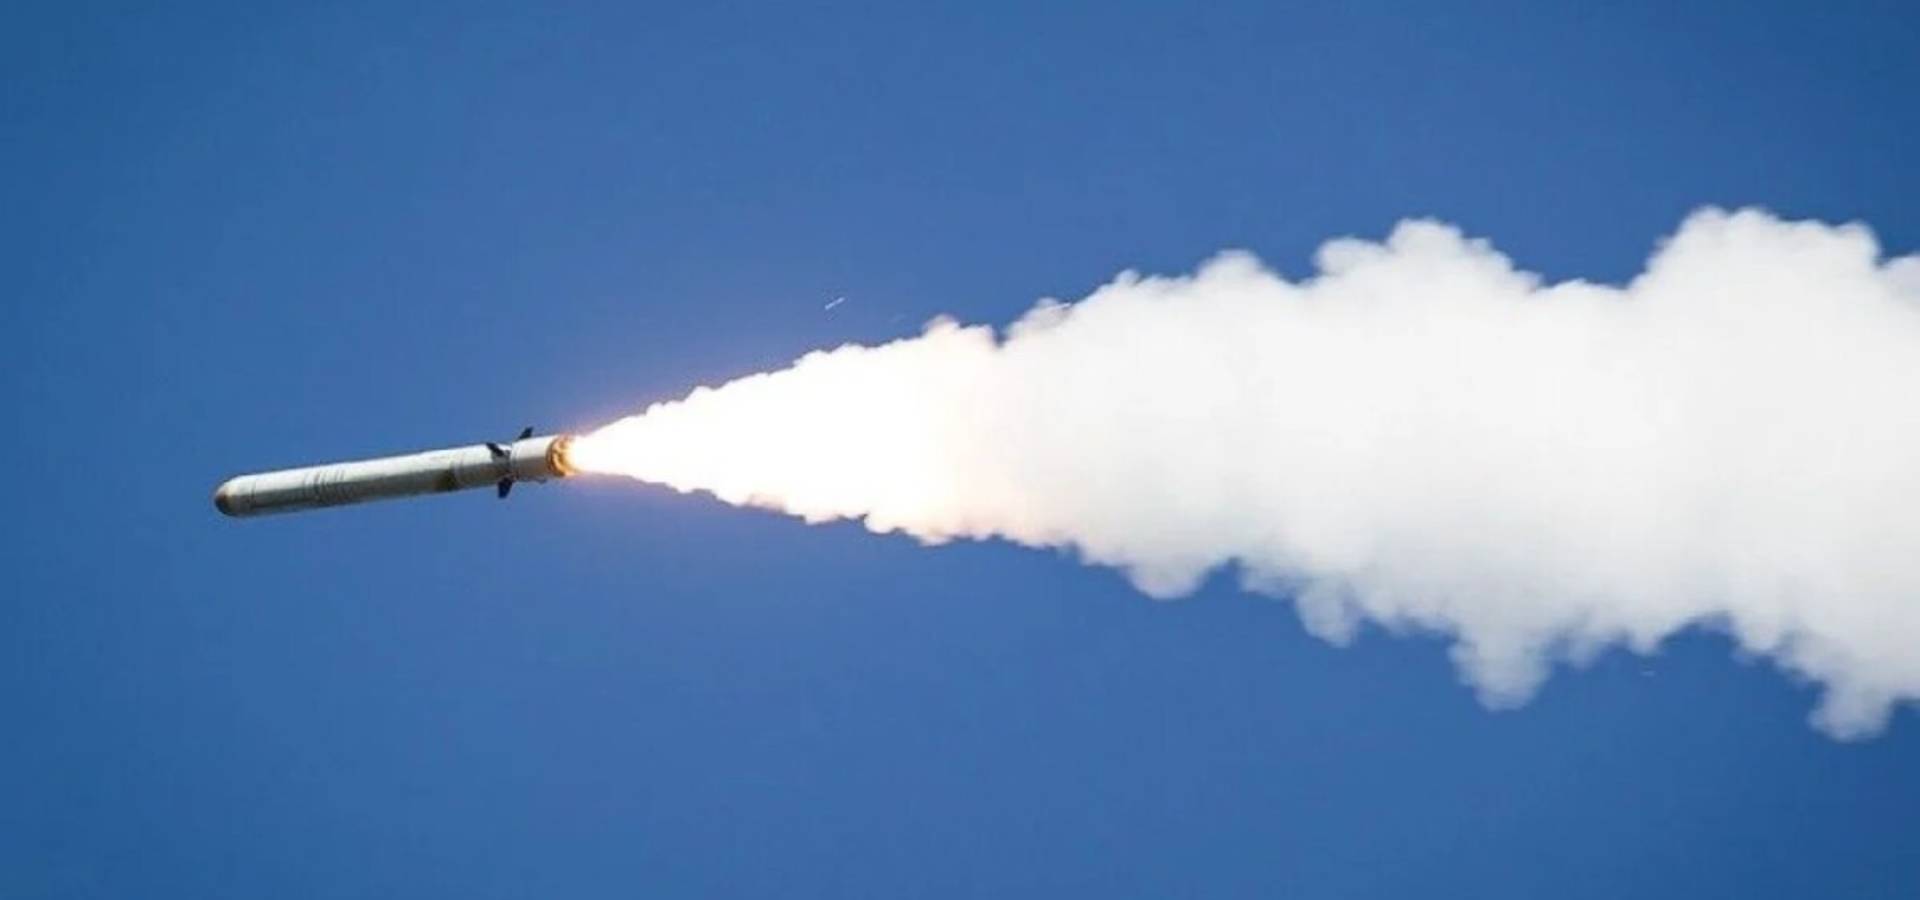 2014 ракет було використано росією проти України з початку війни, - Зеленський